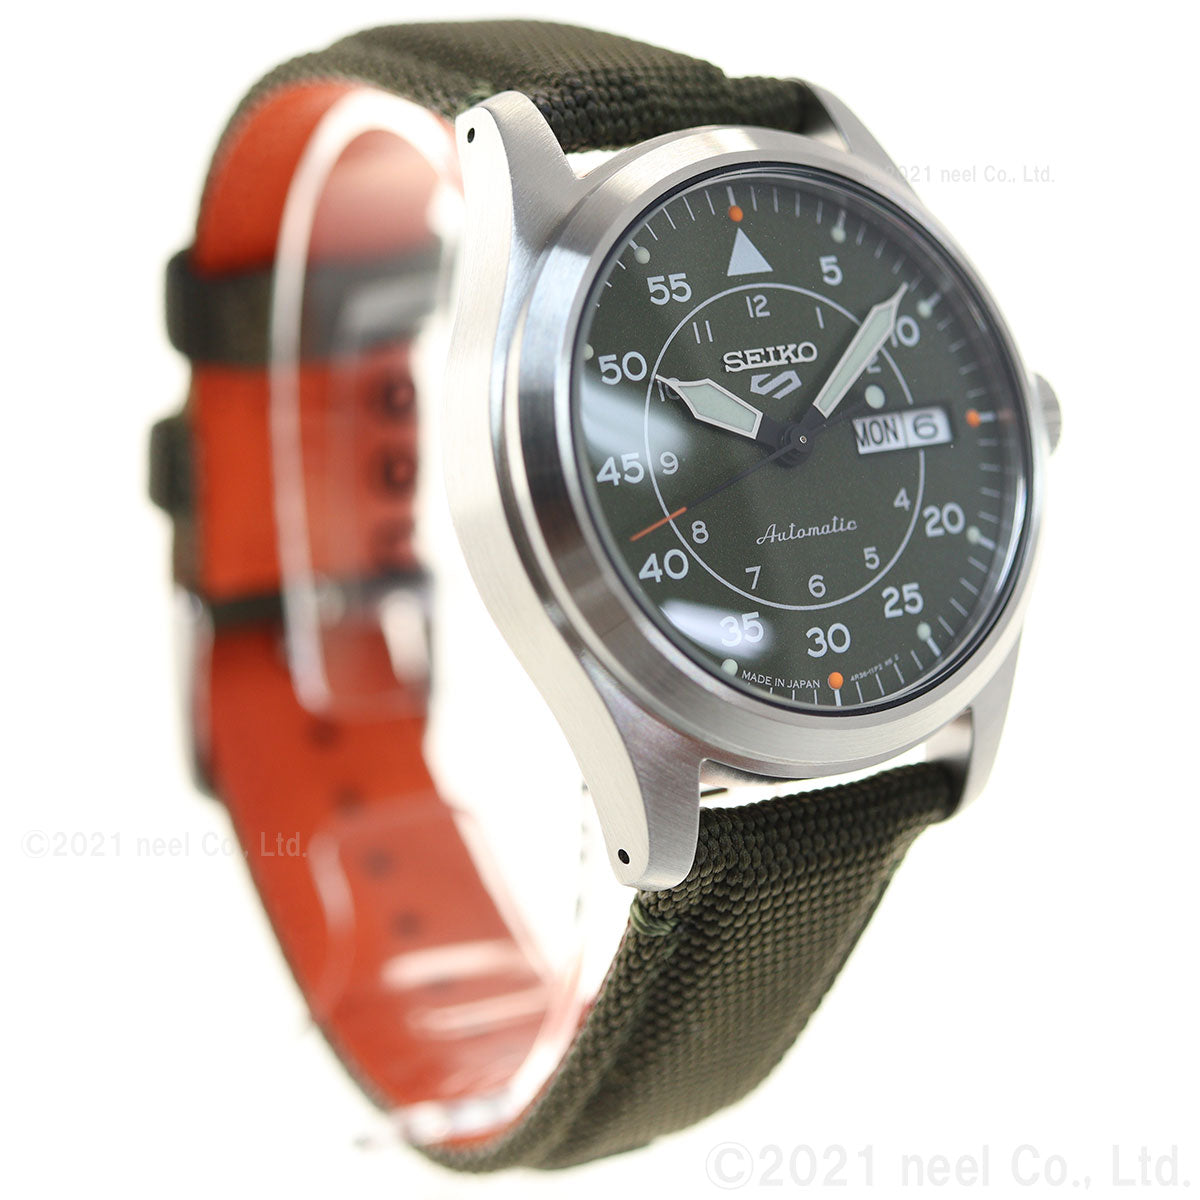 セイコー5 スポーツ SEIKO 5 SPORTS 自動巻き メカニカル 流通限定モデル 腕時計 メンズ セイコーファイブ ストリート Street SBSA141